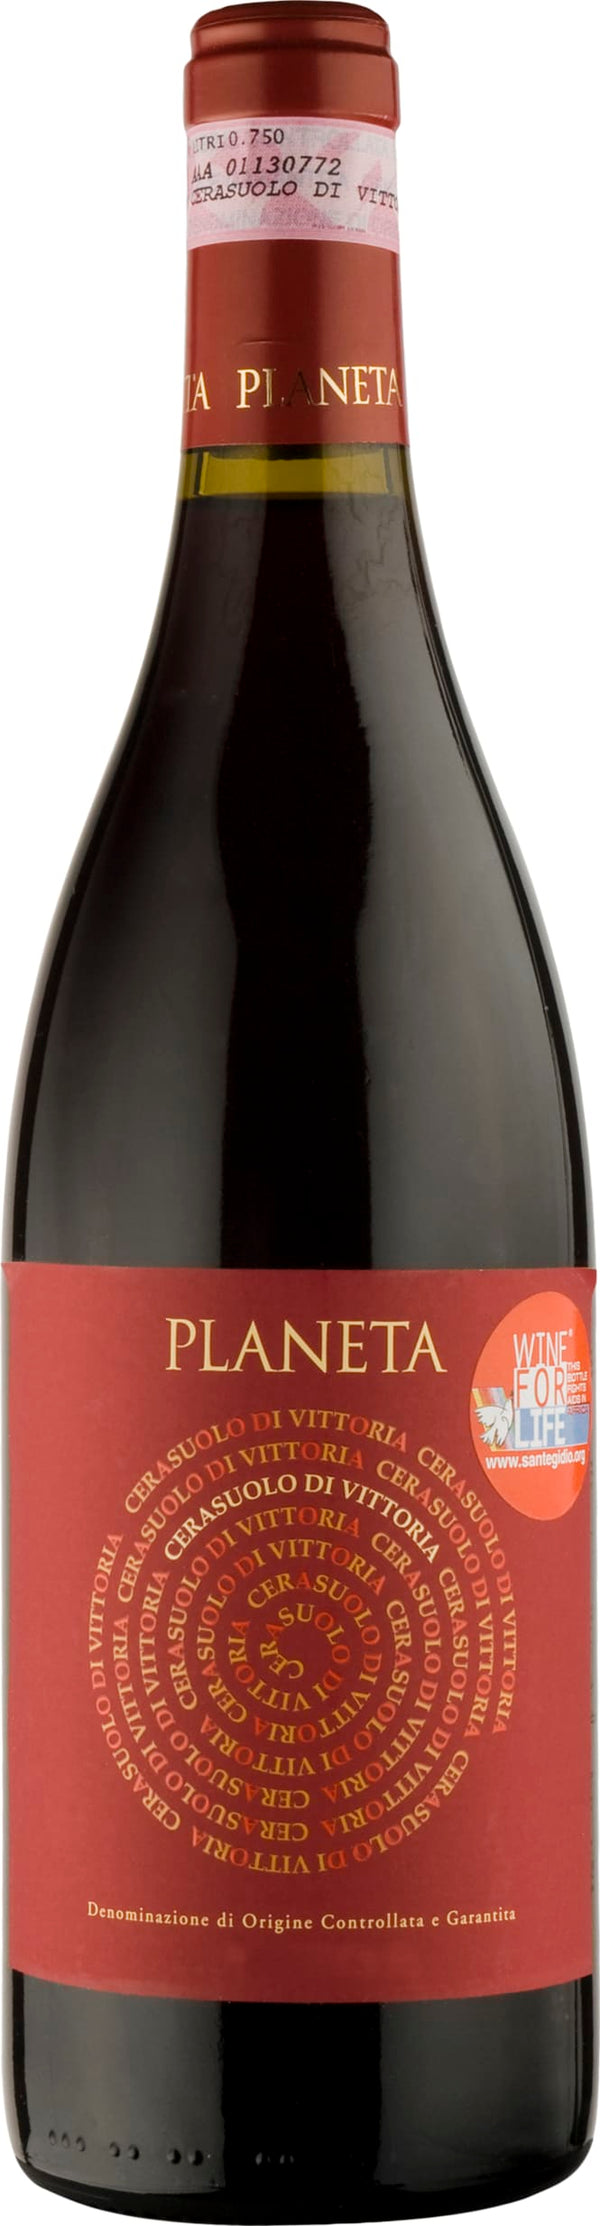 Planeta Cerasuolo di Vittoria 2021 6x75cl - Just Wines 